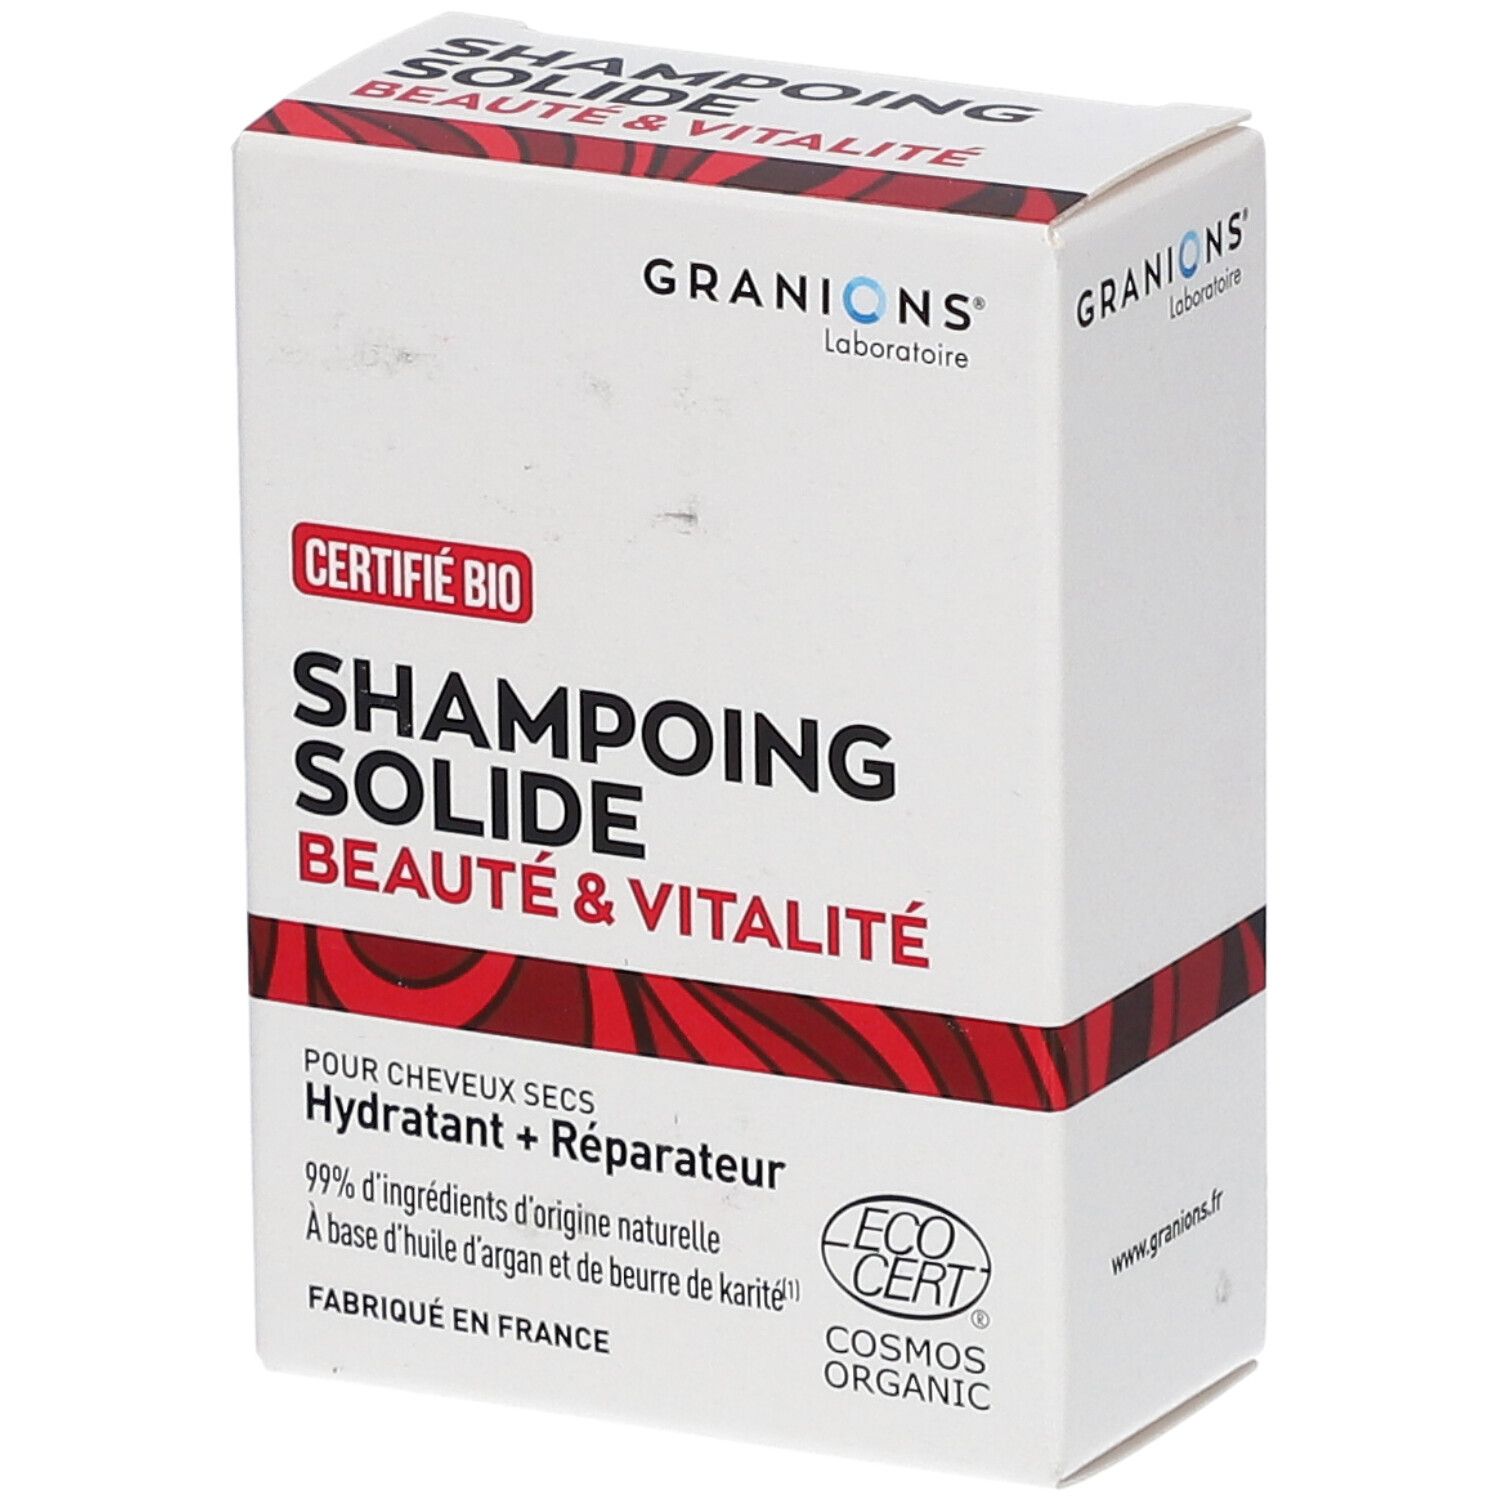 Granions® Shampoing Solide Certifié Bio - Beauté & Vitalité